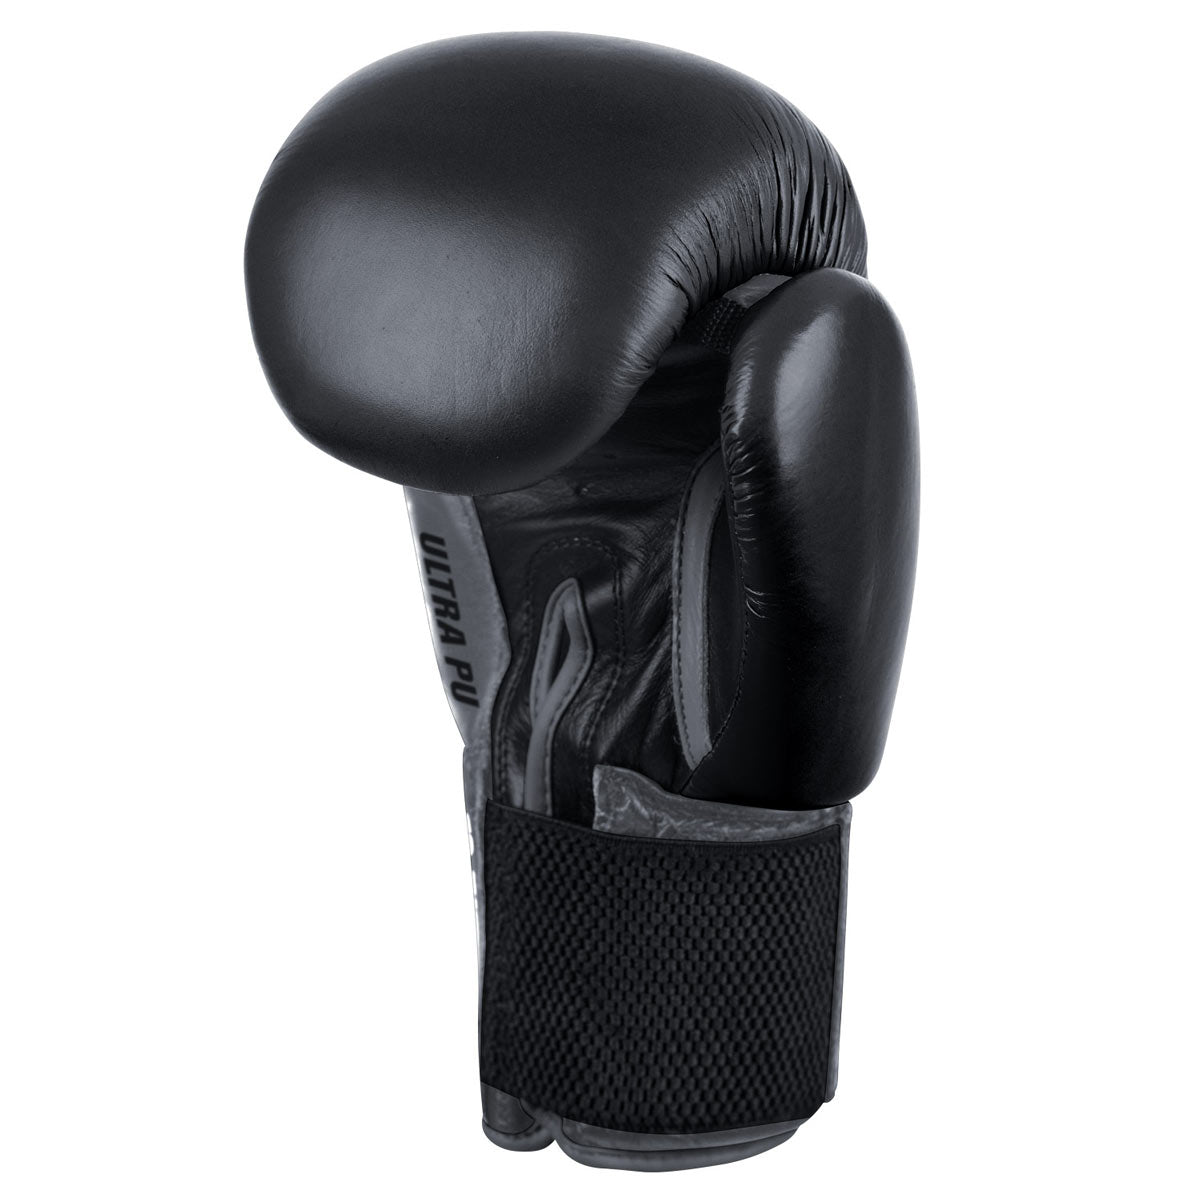 Die Phantom Ultra Boxhandschuhe verfügen über ein elastisches Band am Handgelenk und bieten so überragende Unterstützung während Training und Wettkampf.